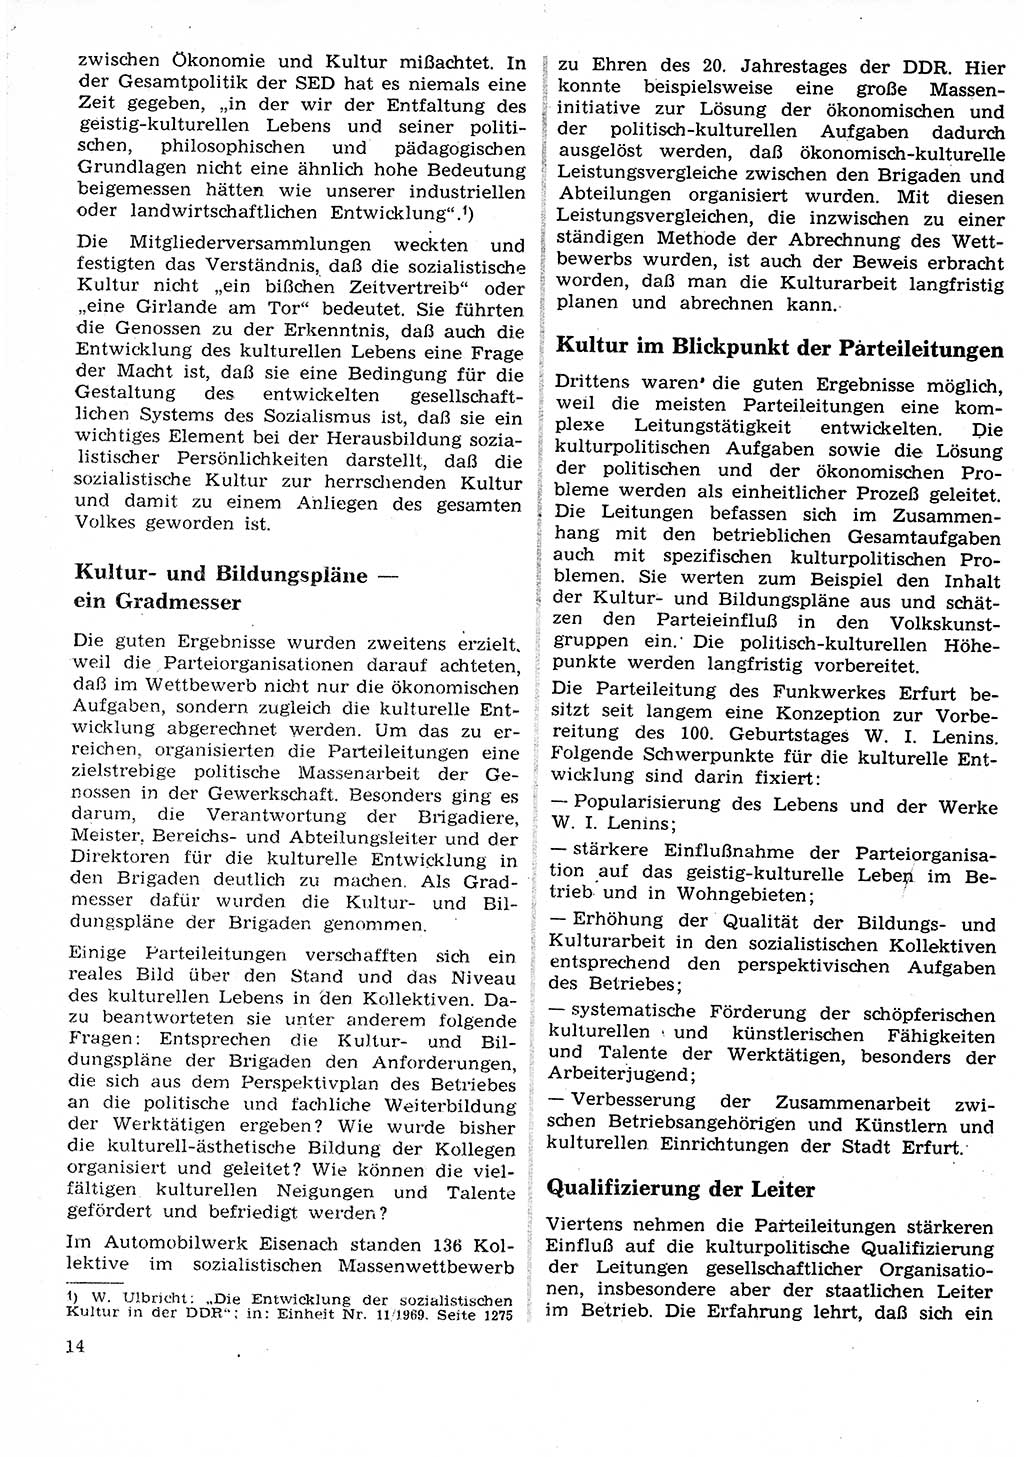 Neuer Weg (NW), Organ des Zentralkomitees (ZK) der SED (Sozialistische Einheitspartei Deutschlands) für Fragen des Parteilebens, 25. Jahrgang [Deutsche Demokratische Republik (DDR)] 1970, Seite 14 (NW ZK SED DDR 1970, S. 14)